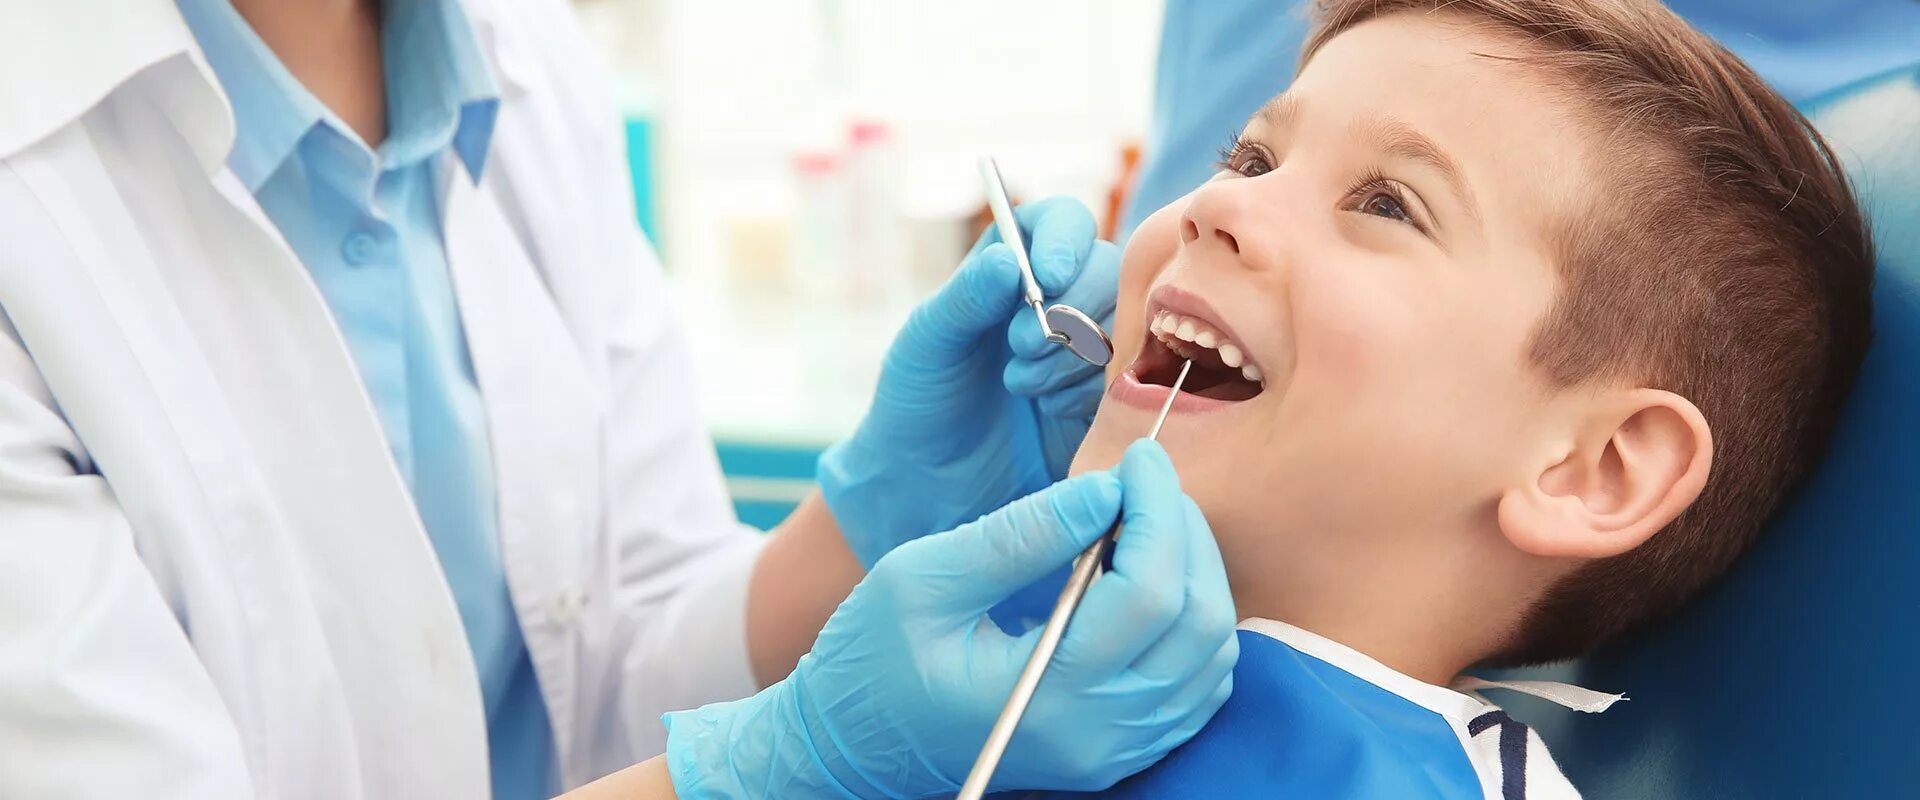 Врач лечащий кариес. Ребенок у стоматолога. Стоматология дети. Детские зубы у стоматолога.